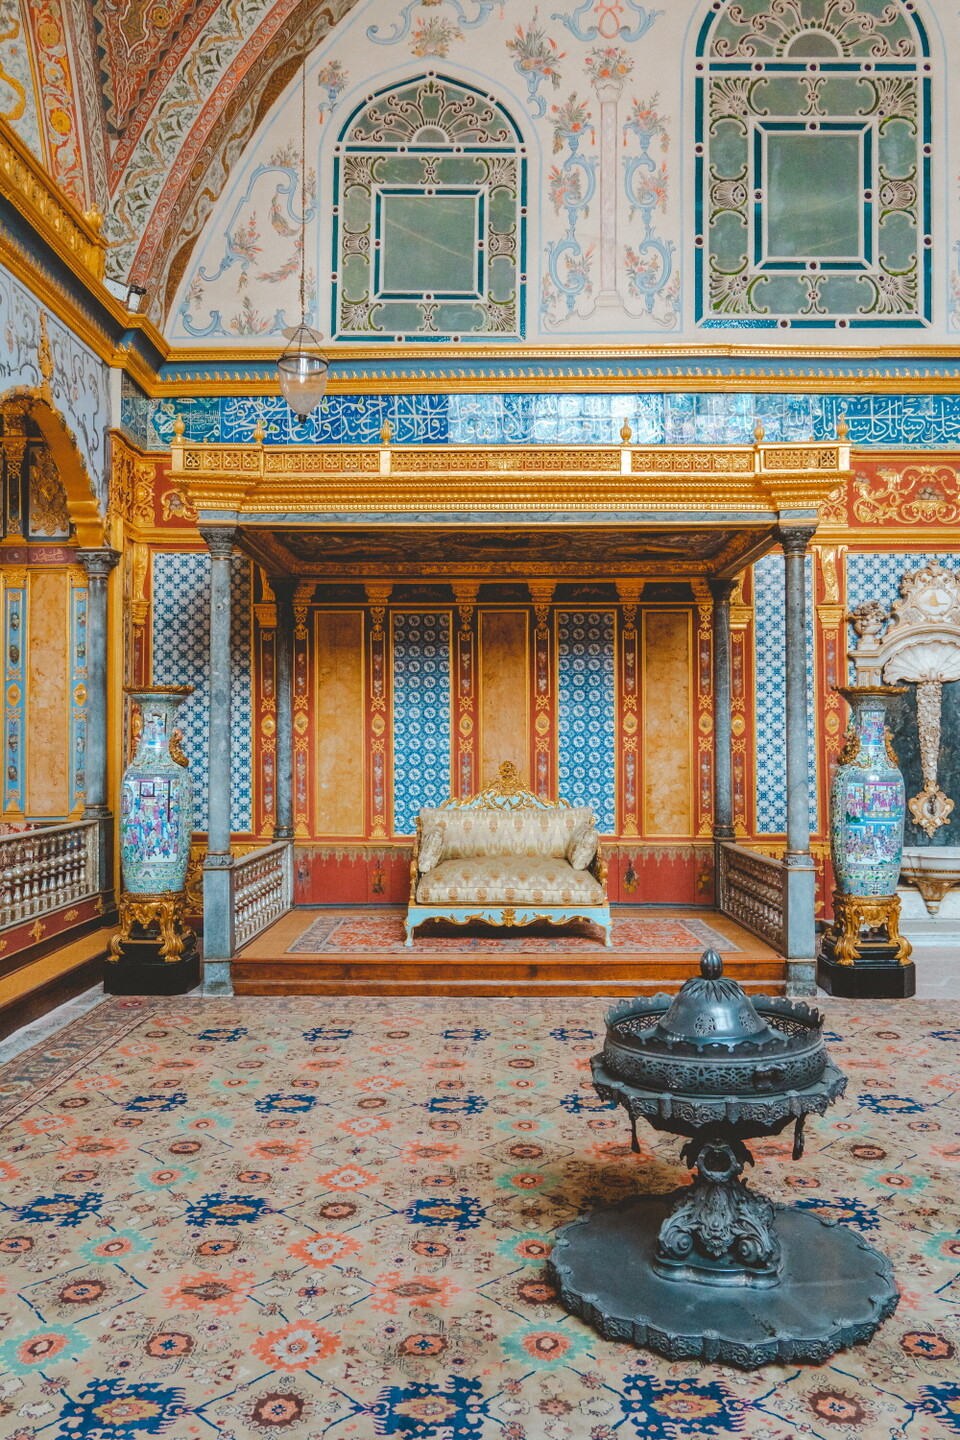 톱카프 궁전도 구시가지의 대표적인 랜드마크 중 하나다